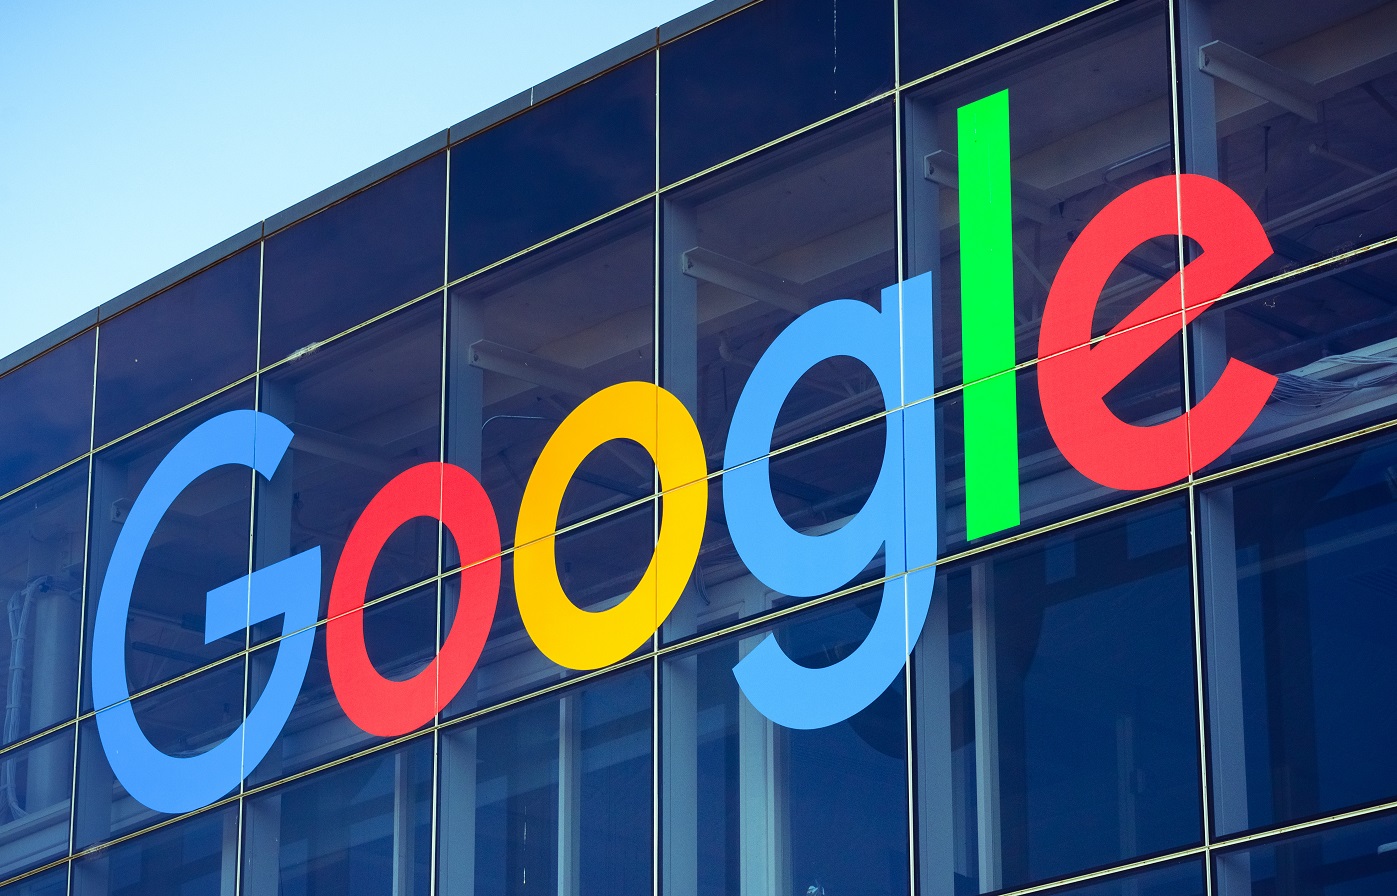 Google: Une mise à jour a causé un dysfonctionnement sur plusieurs services